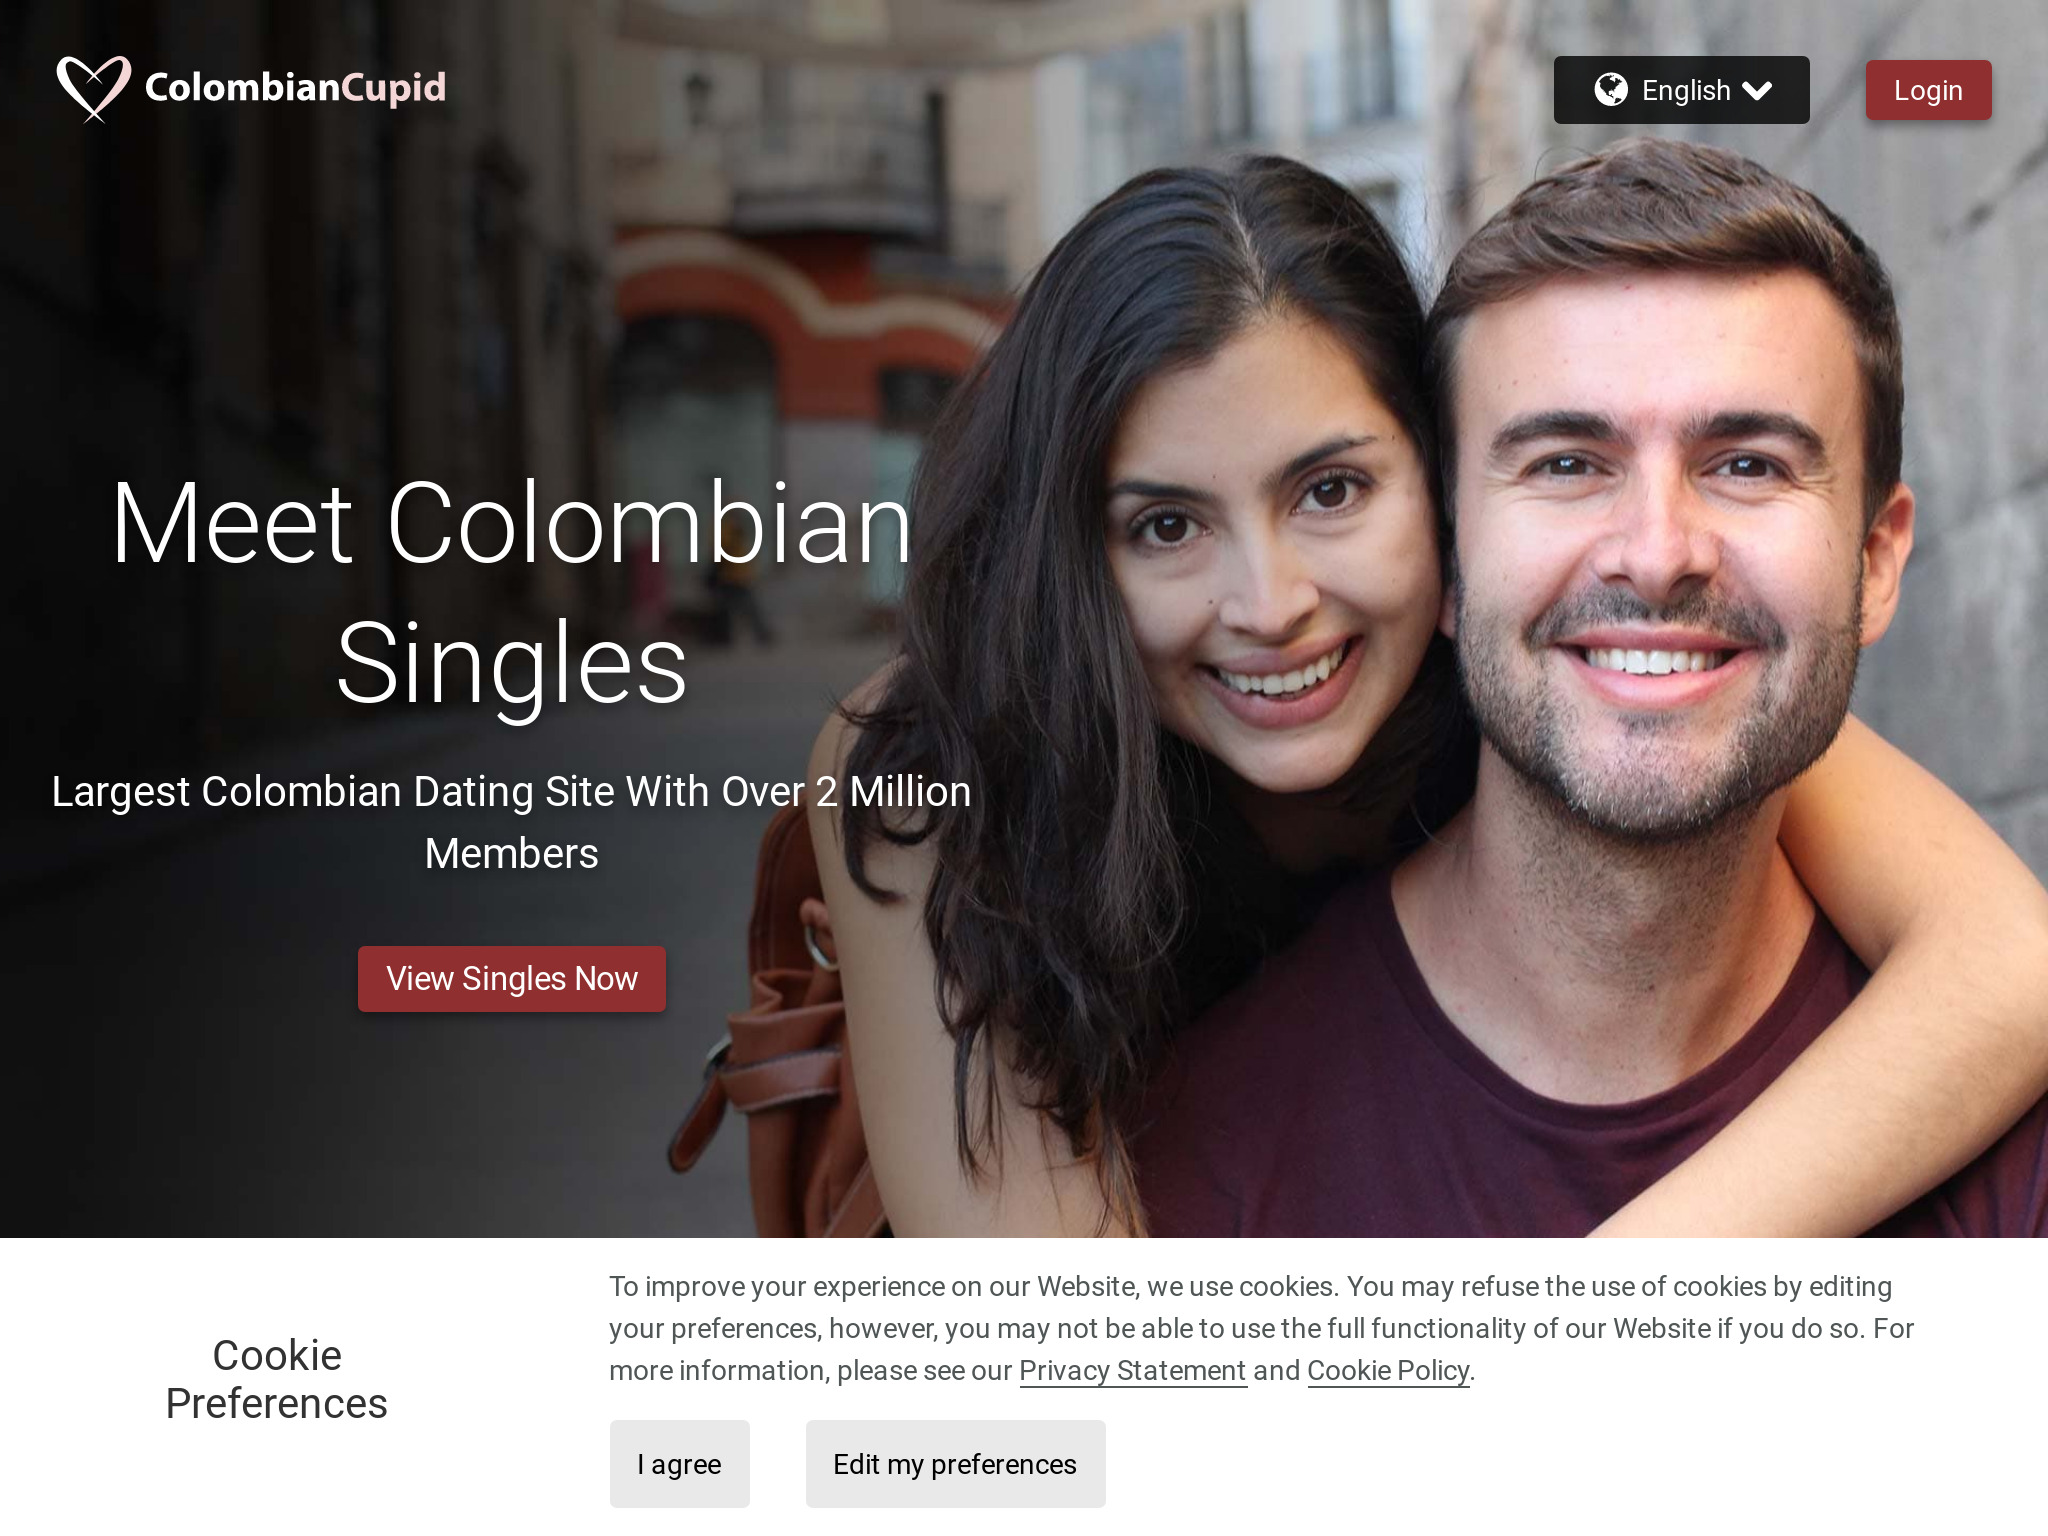 Explorer le monde des rencontres en ligne &#8211; Revue ColombianCupid